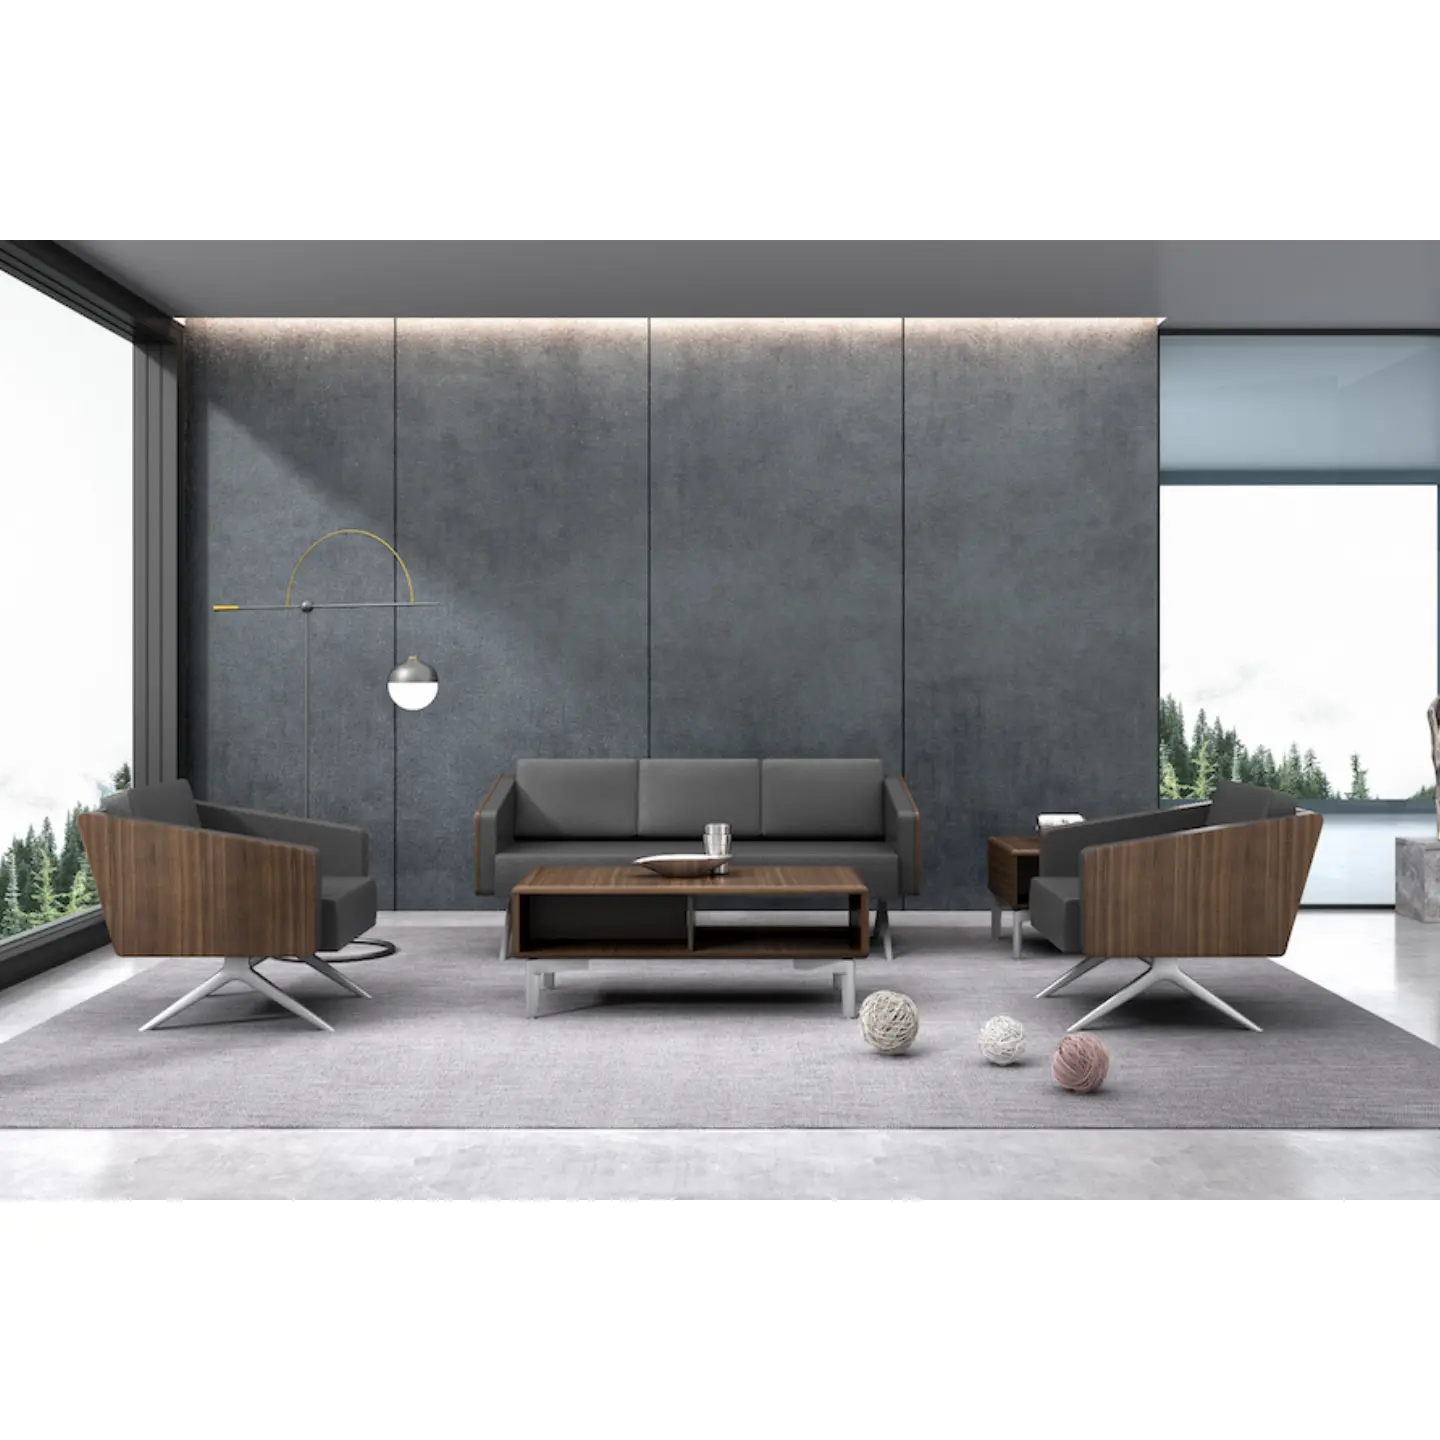 Muebles de diseño moderno Sofás de oficina Sofá Seccional de cuero genuino 3 asientos Muebles de habitación Juegos de sofás de oficina de negocios